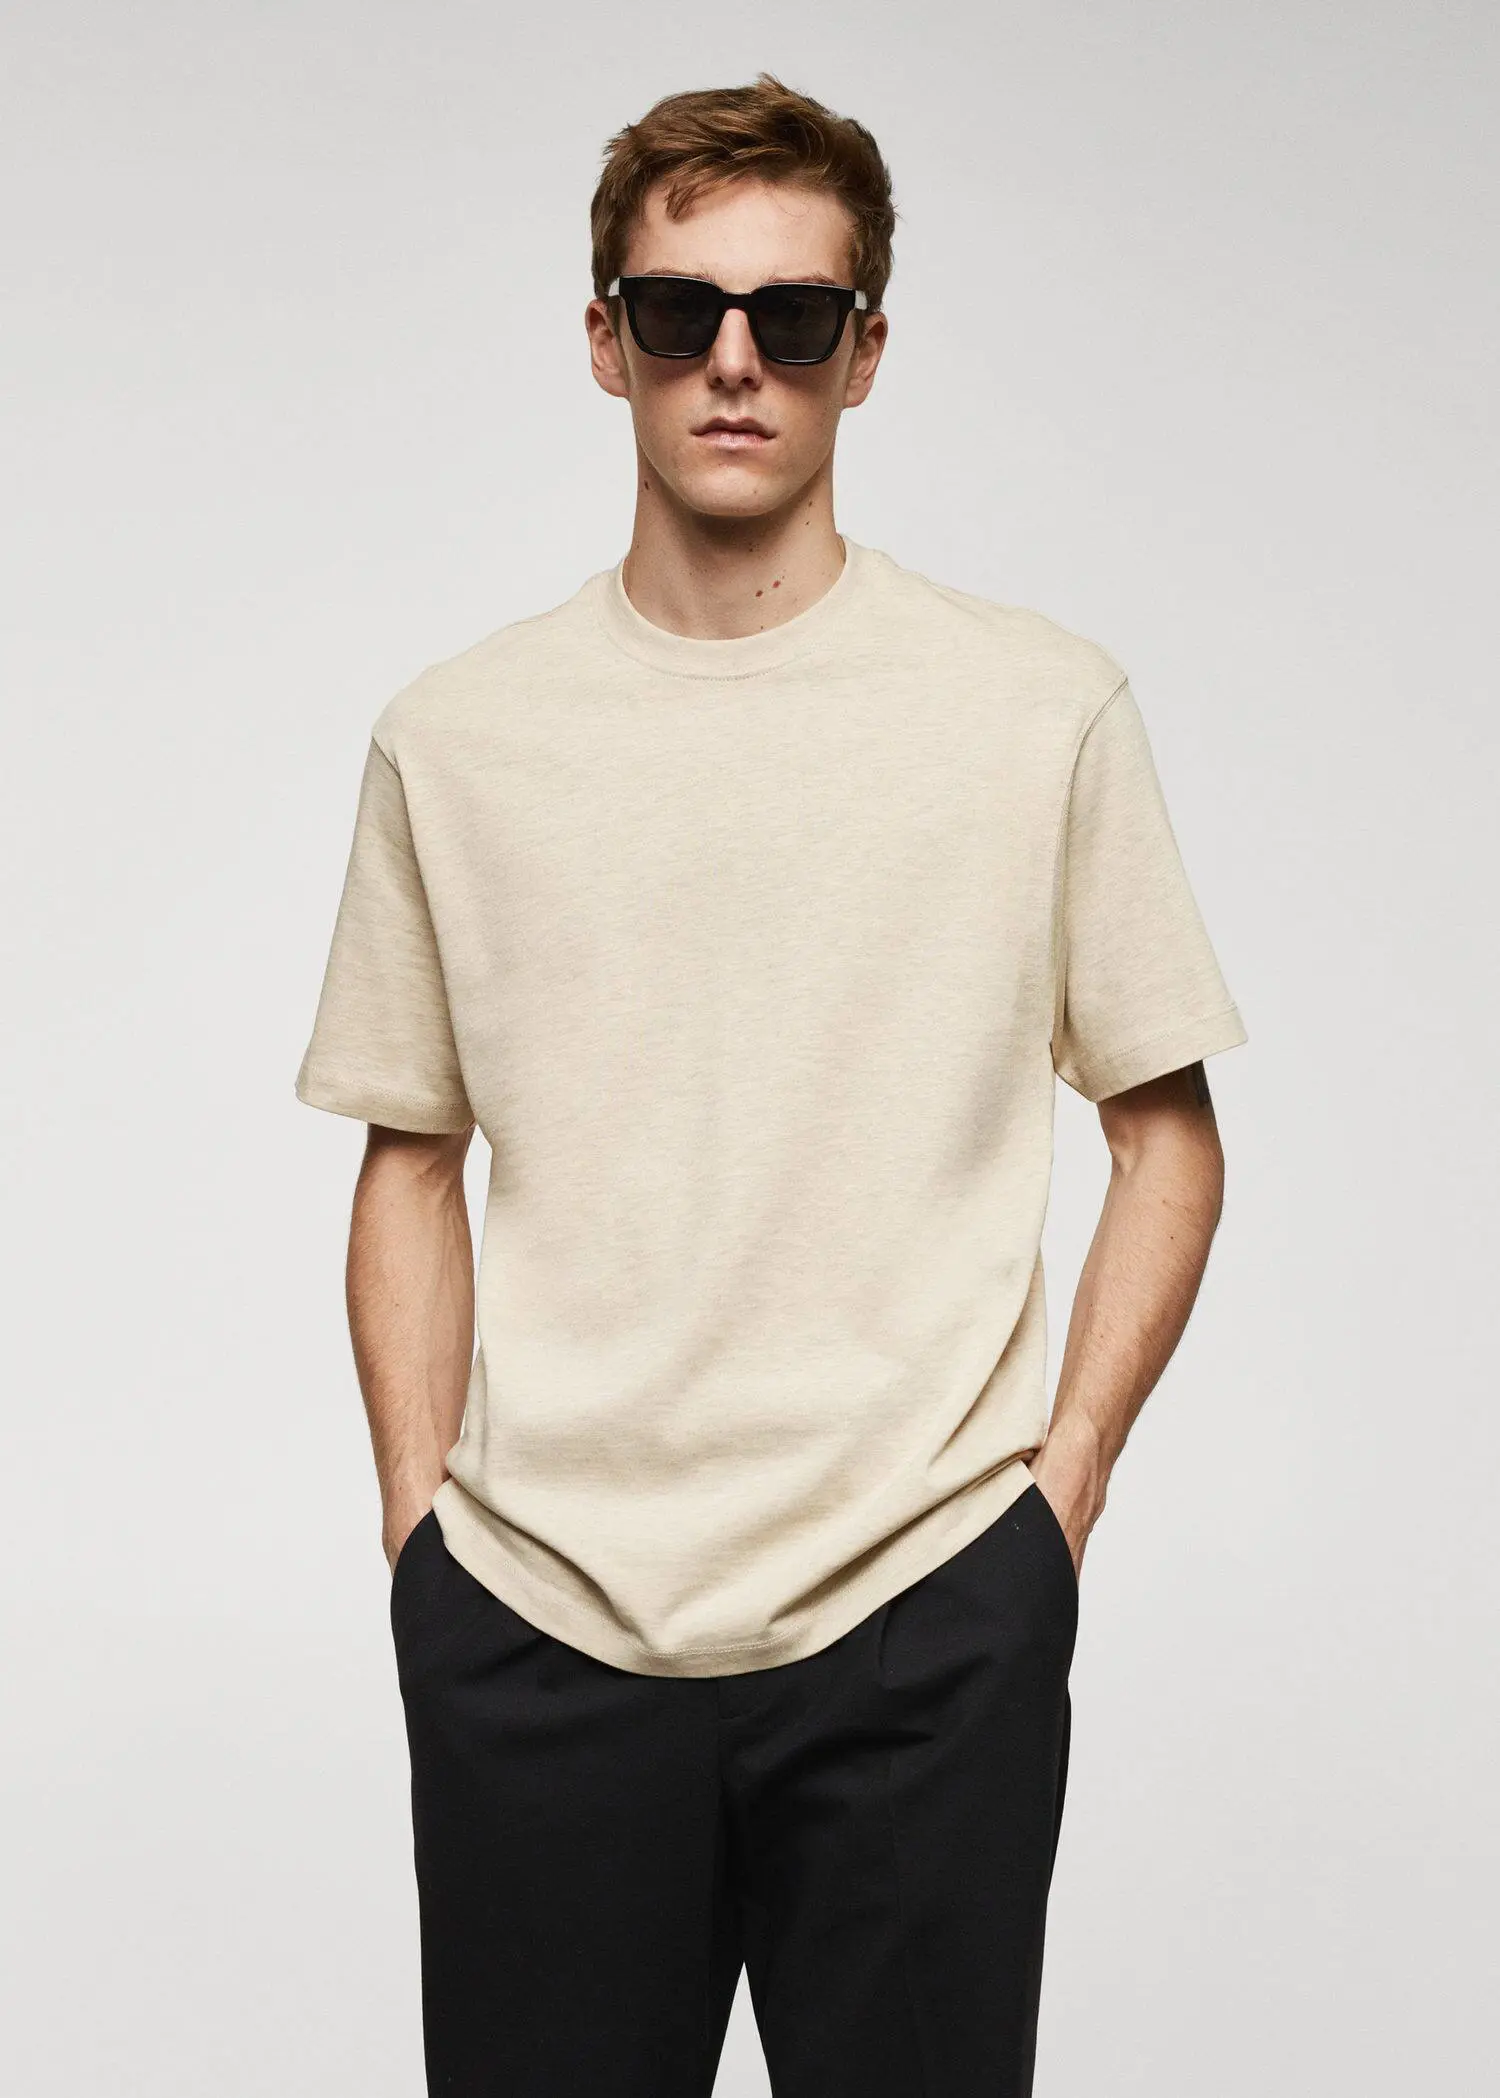 Mango T-shirt básica de 100% algodão relaxed fit. 1